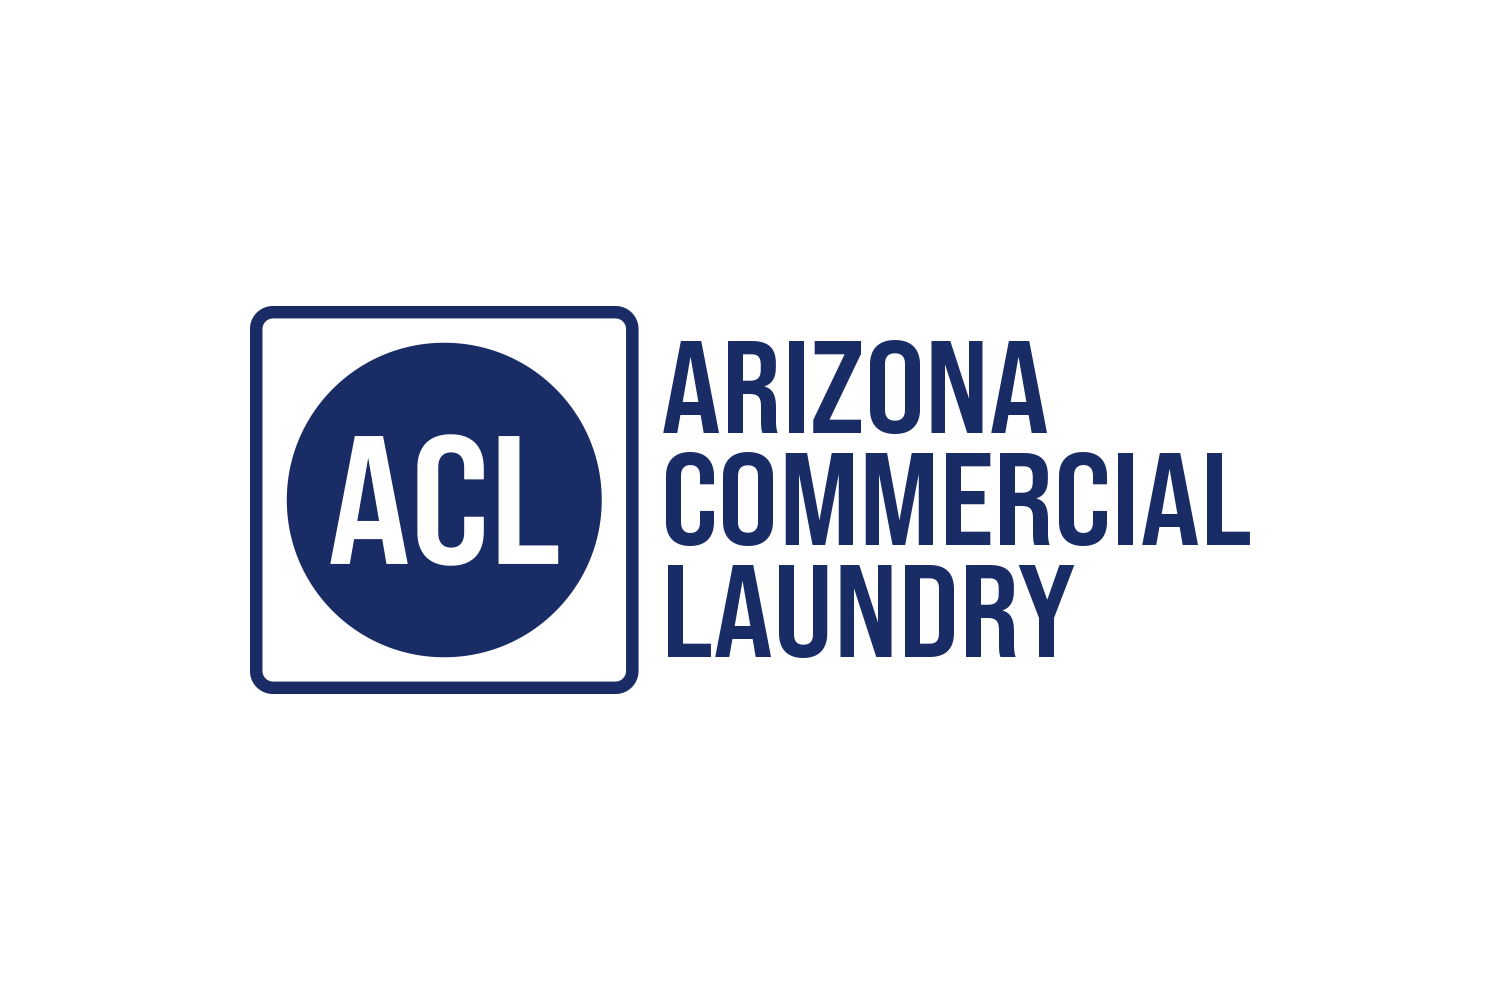 Arizona Commercial Laundry